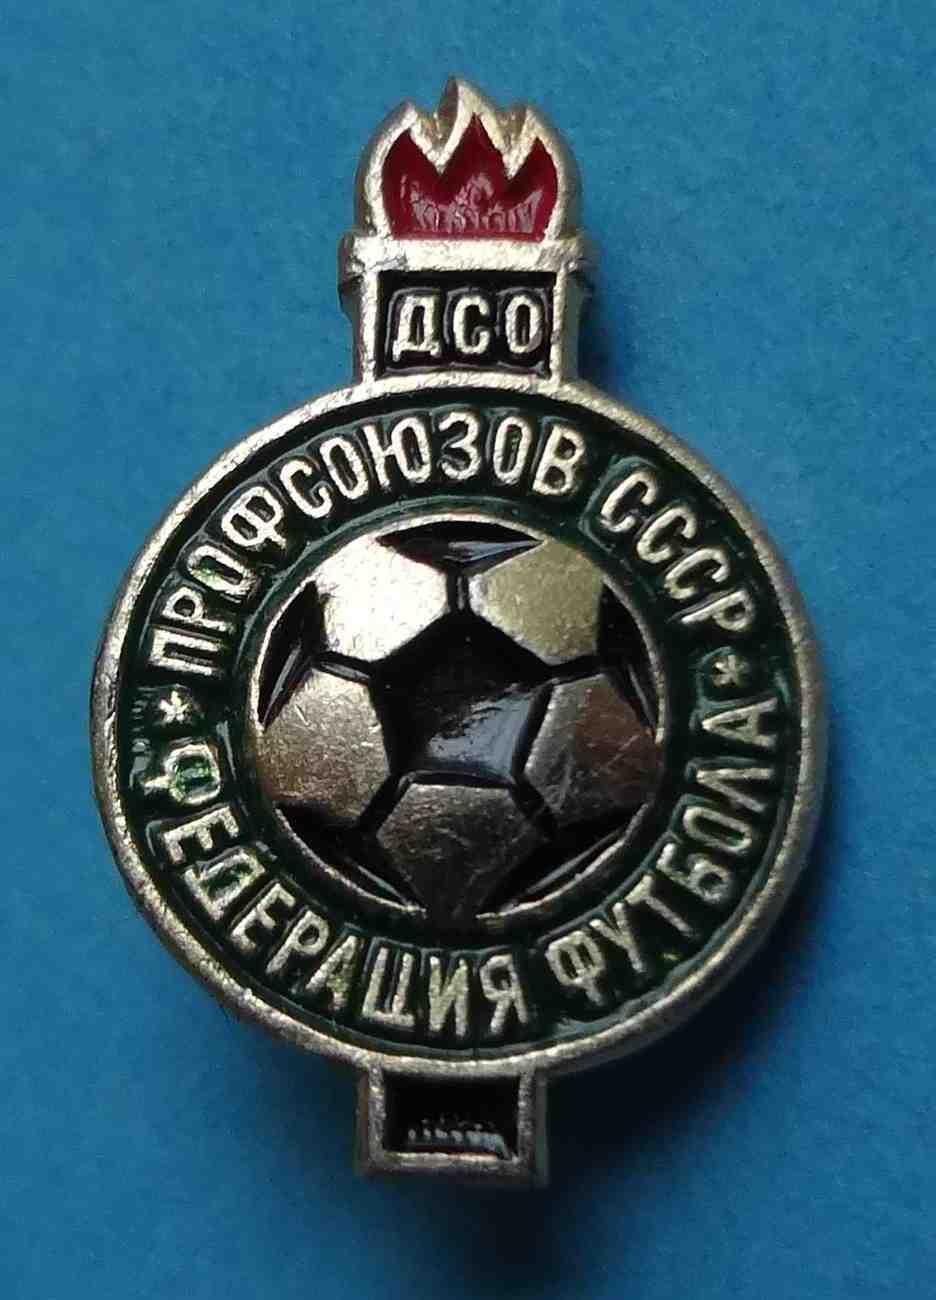 ДСО Профсоюзов СССР Федерация футбола